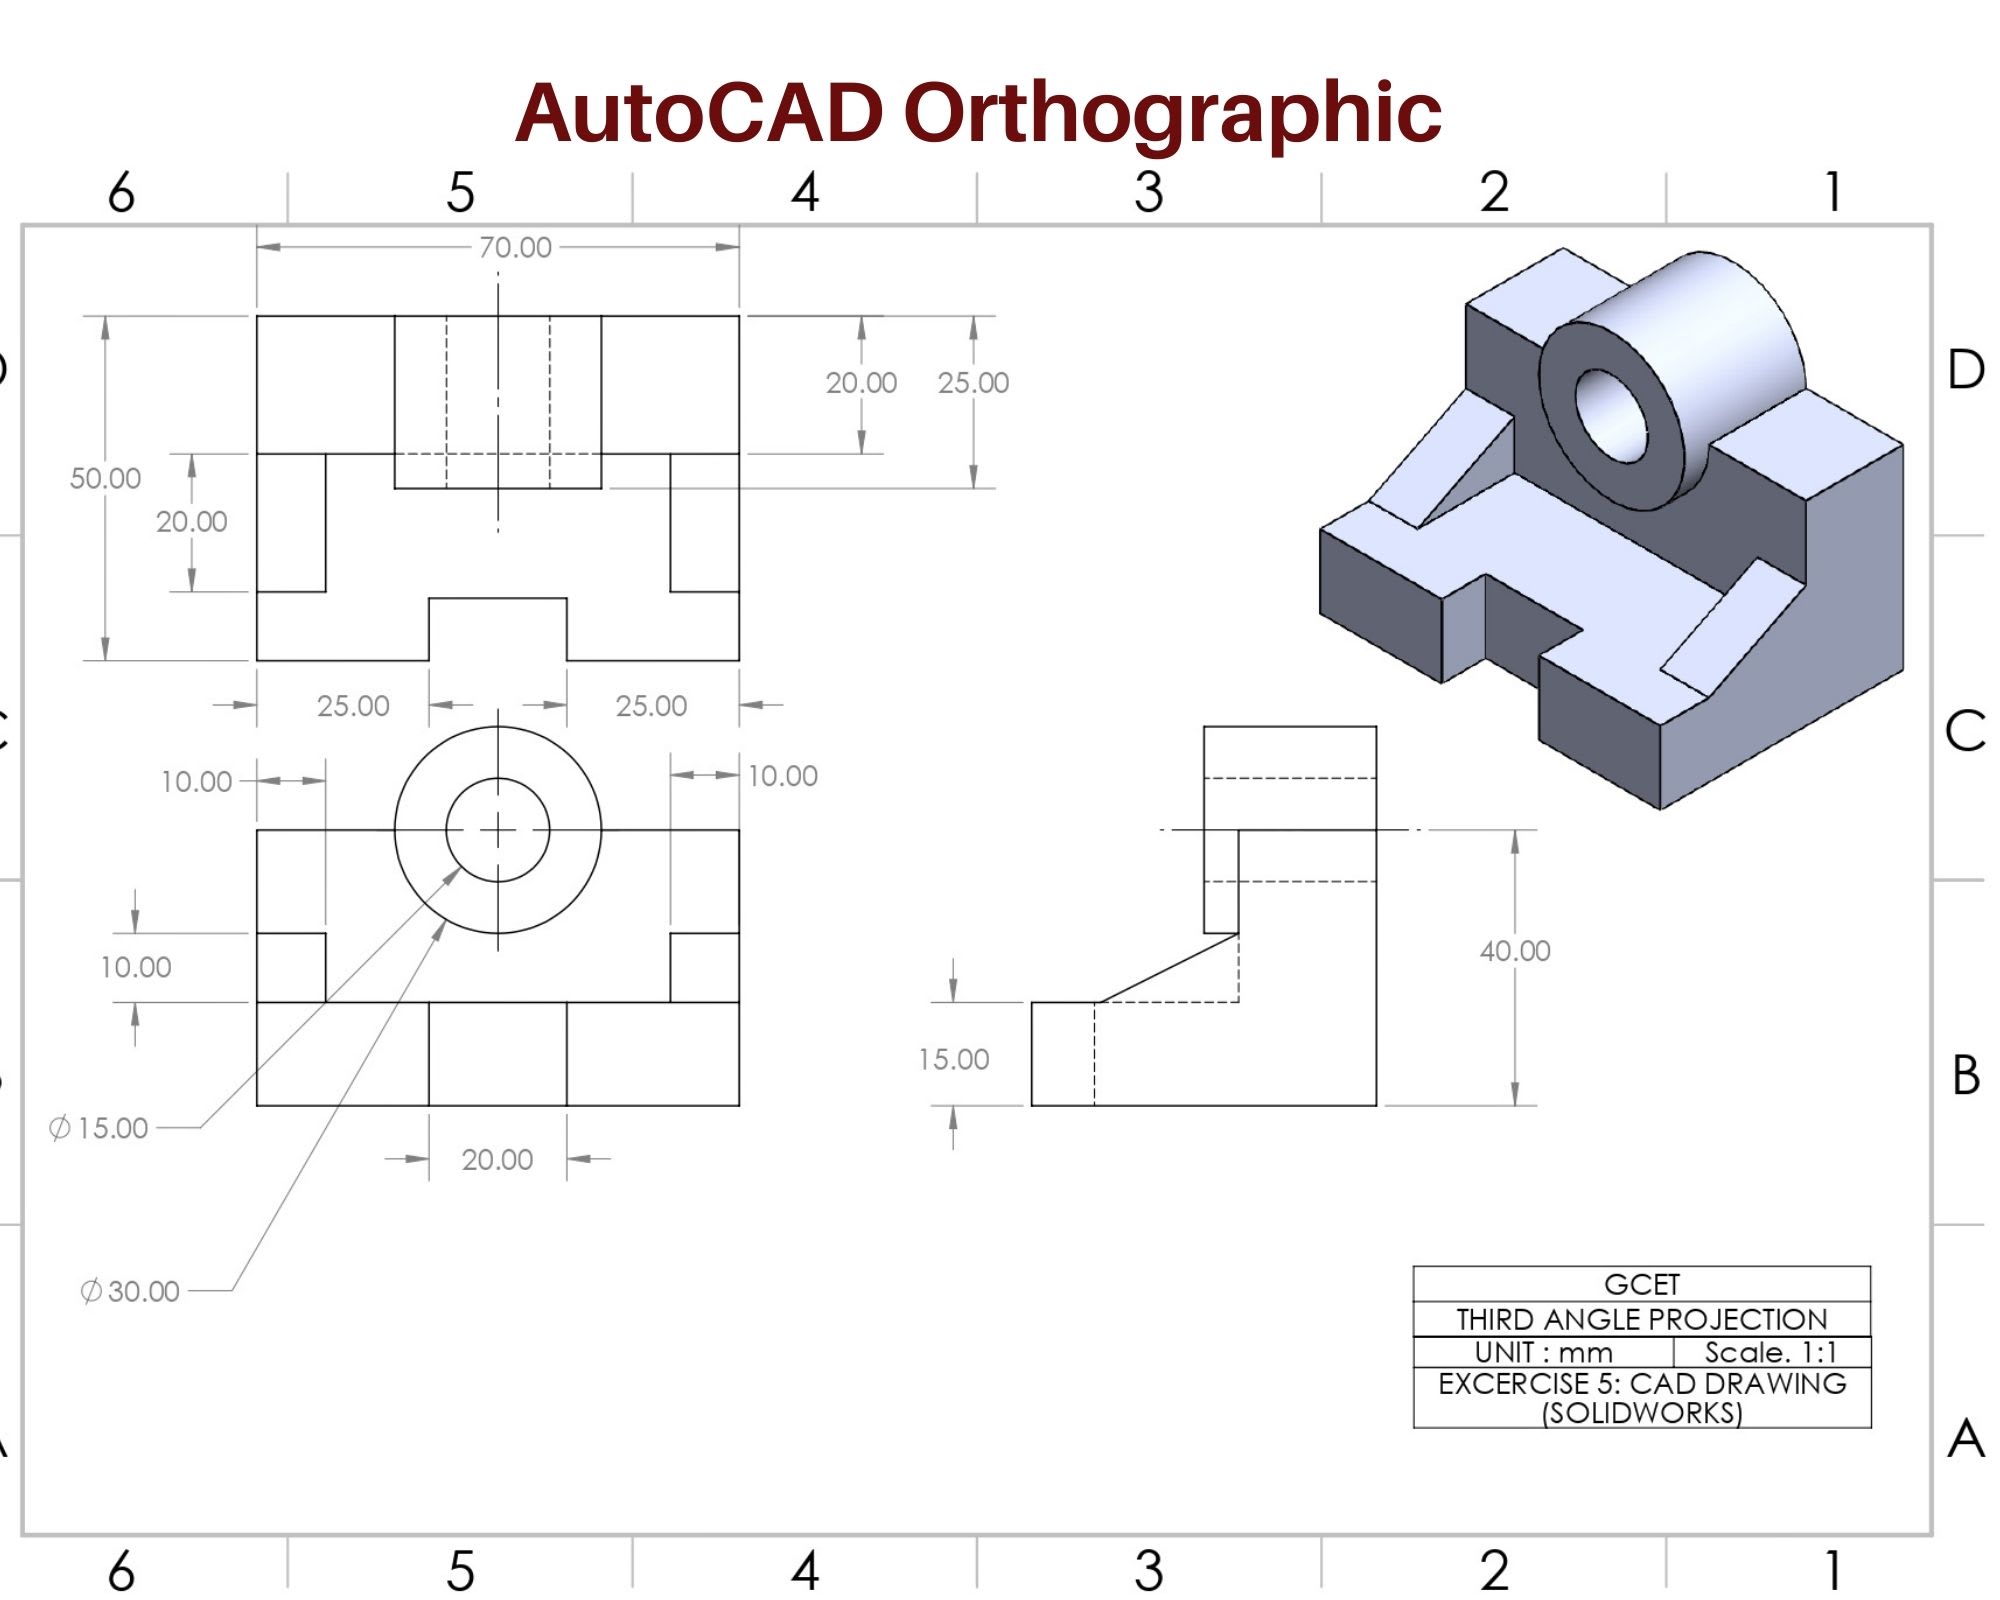 AutoCAD và Inventor có thể giúp bạn tạo ra các bản vẽ cơ khí 2D và 3D phức tạp một cách dễ dàng và hiệu quả. Xem hình ảnh này để đồng hành cùng học viên khác trong việc thiết kế bản vẽ cơ khí. Bạn sẽ học được cách sử dụng các công cụ thiết kế và dựng mô hình, từ đó sẽ có những ý tưởng sáng tạo cho công việc của mình.